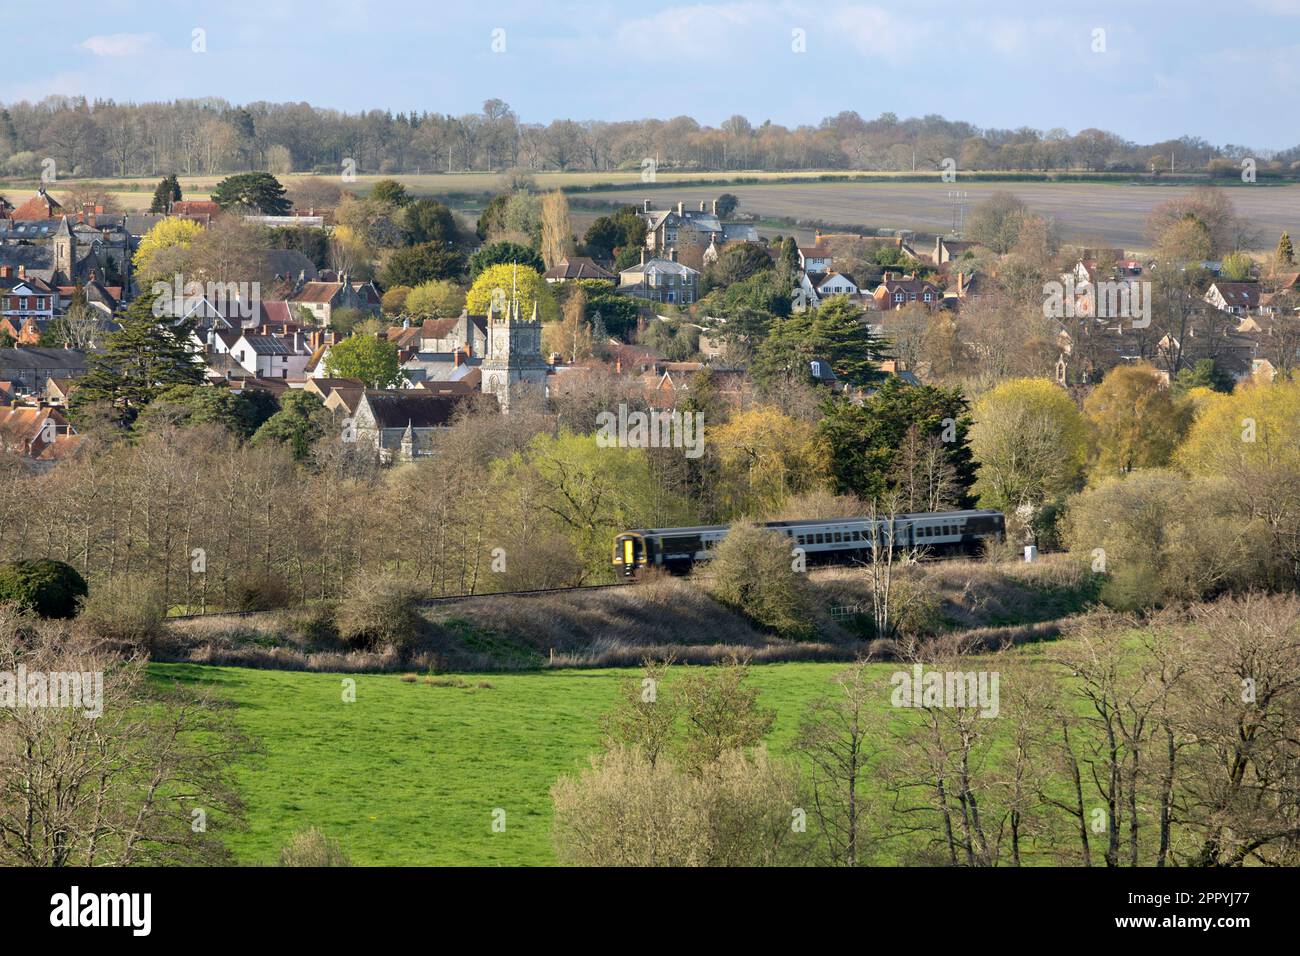 Vue sur la ville de Tisbury dans la vallée de Nadder avec train en premier plan au printemps après-midi lumière du soleil, Tisbury, Wiltshire, Angleterre, Royaume-Uni Banque D'Images